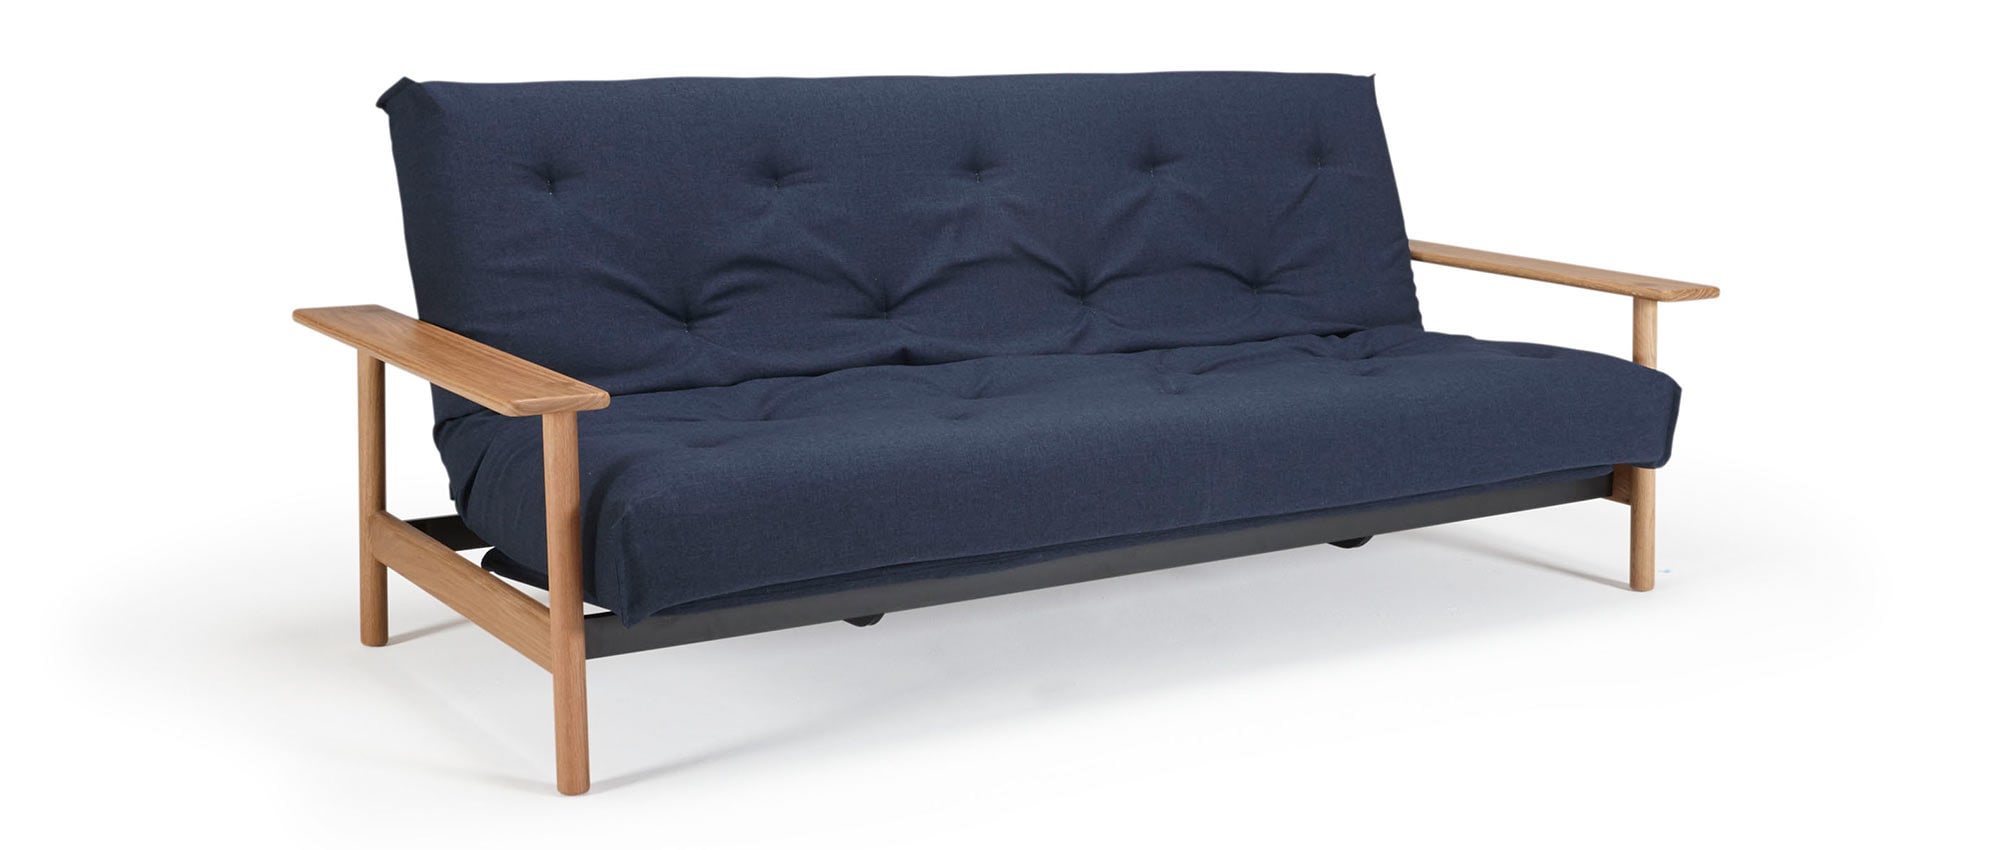 BALDER Schlafsofa Innovation Sofabett für jeden Tag mit Holzarmlehnen, skandinavisches Design - 140x200